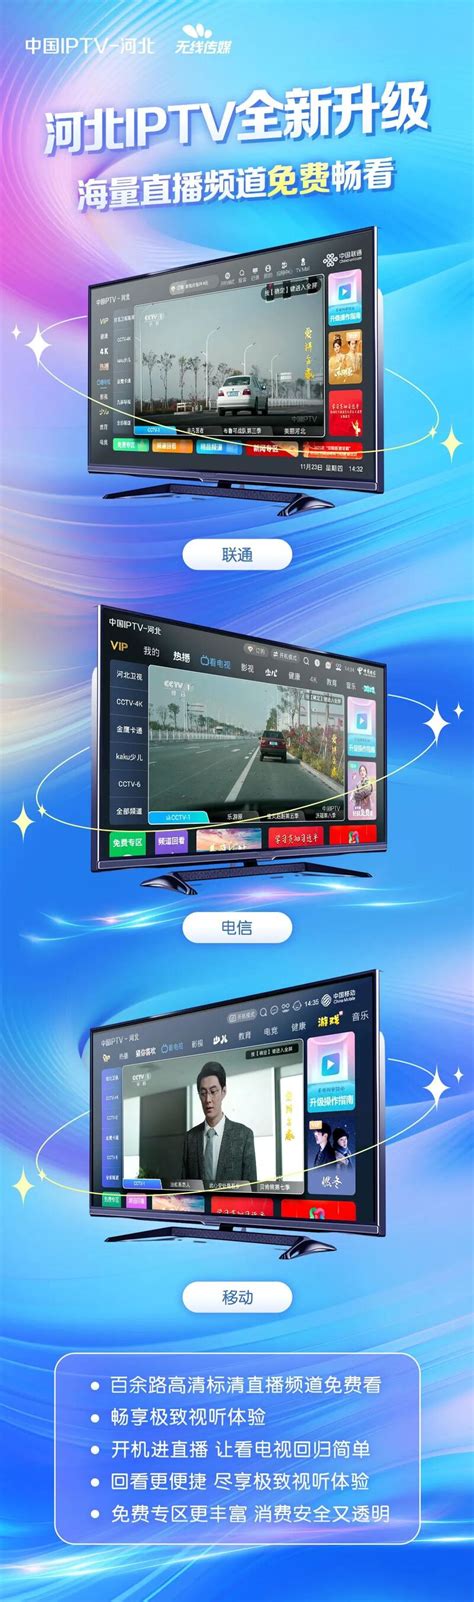 中兴通讯助力江苏电信实现全国首个IPTV平台上“云” - 中兴 — C114通信网